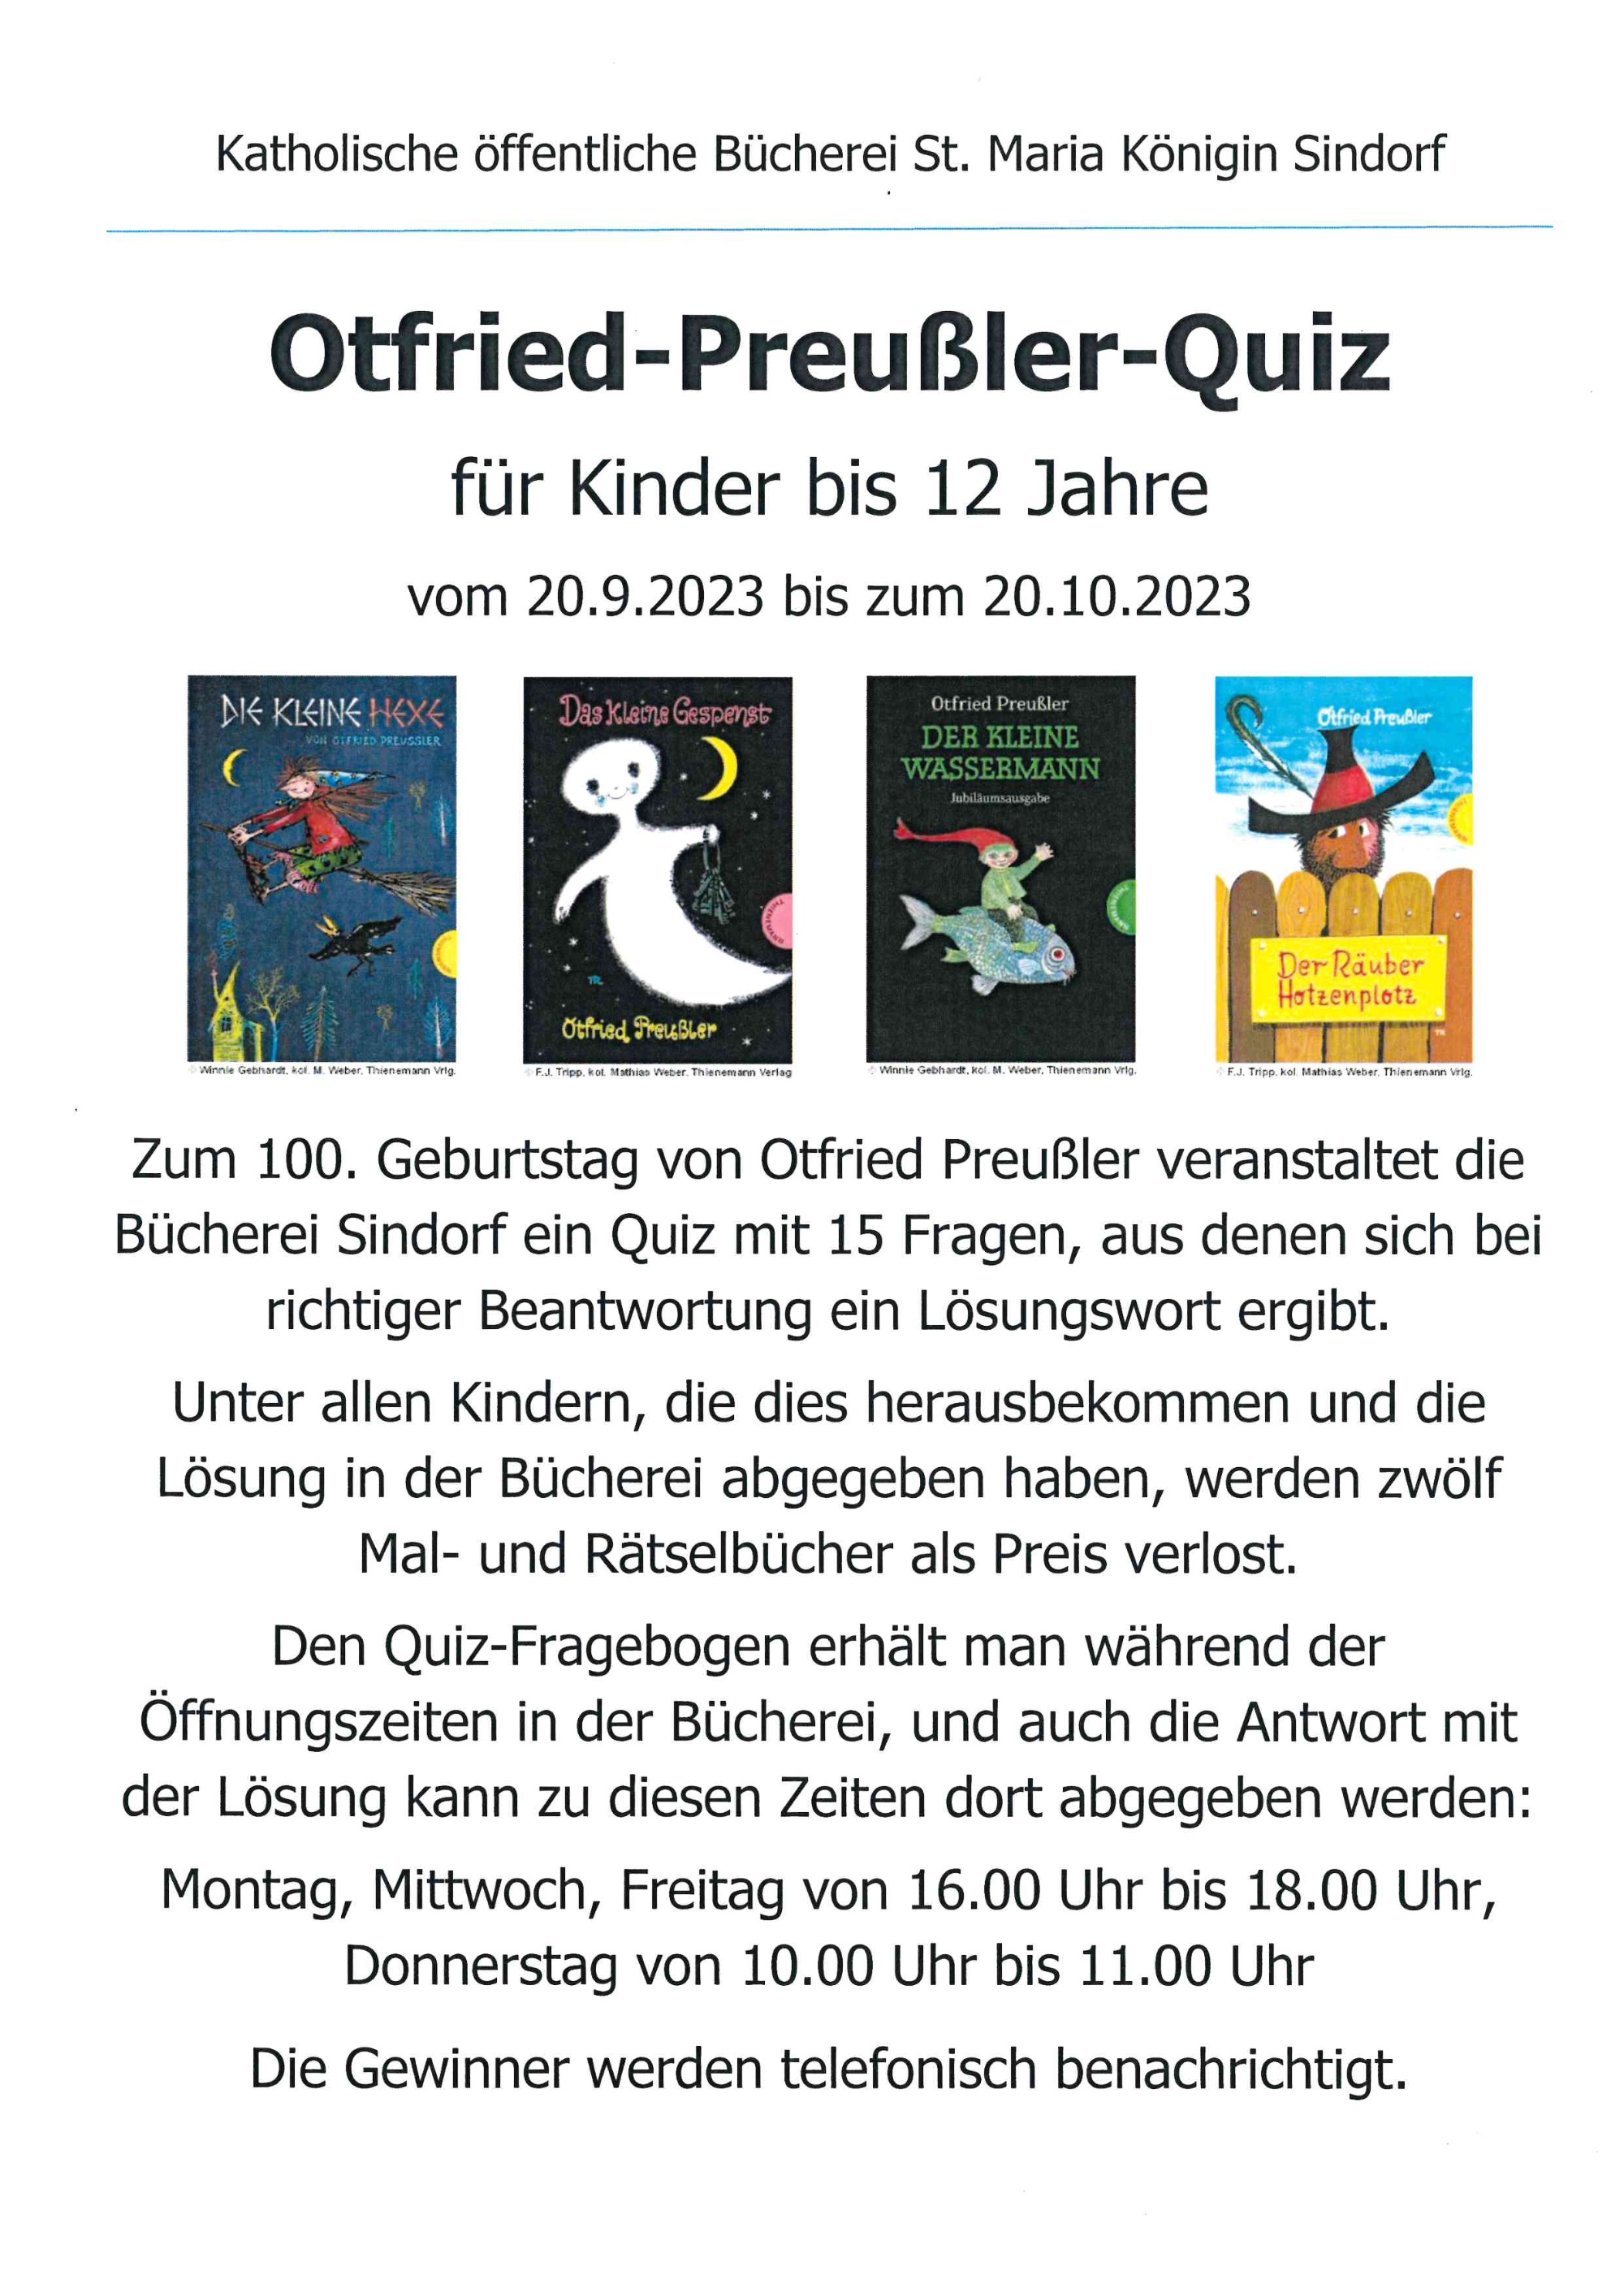 Otfried-Preußler-Quiz